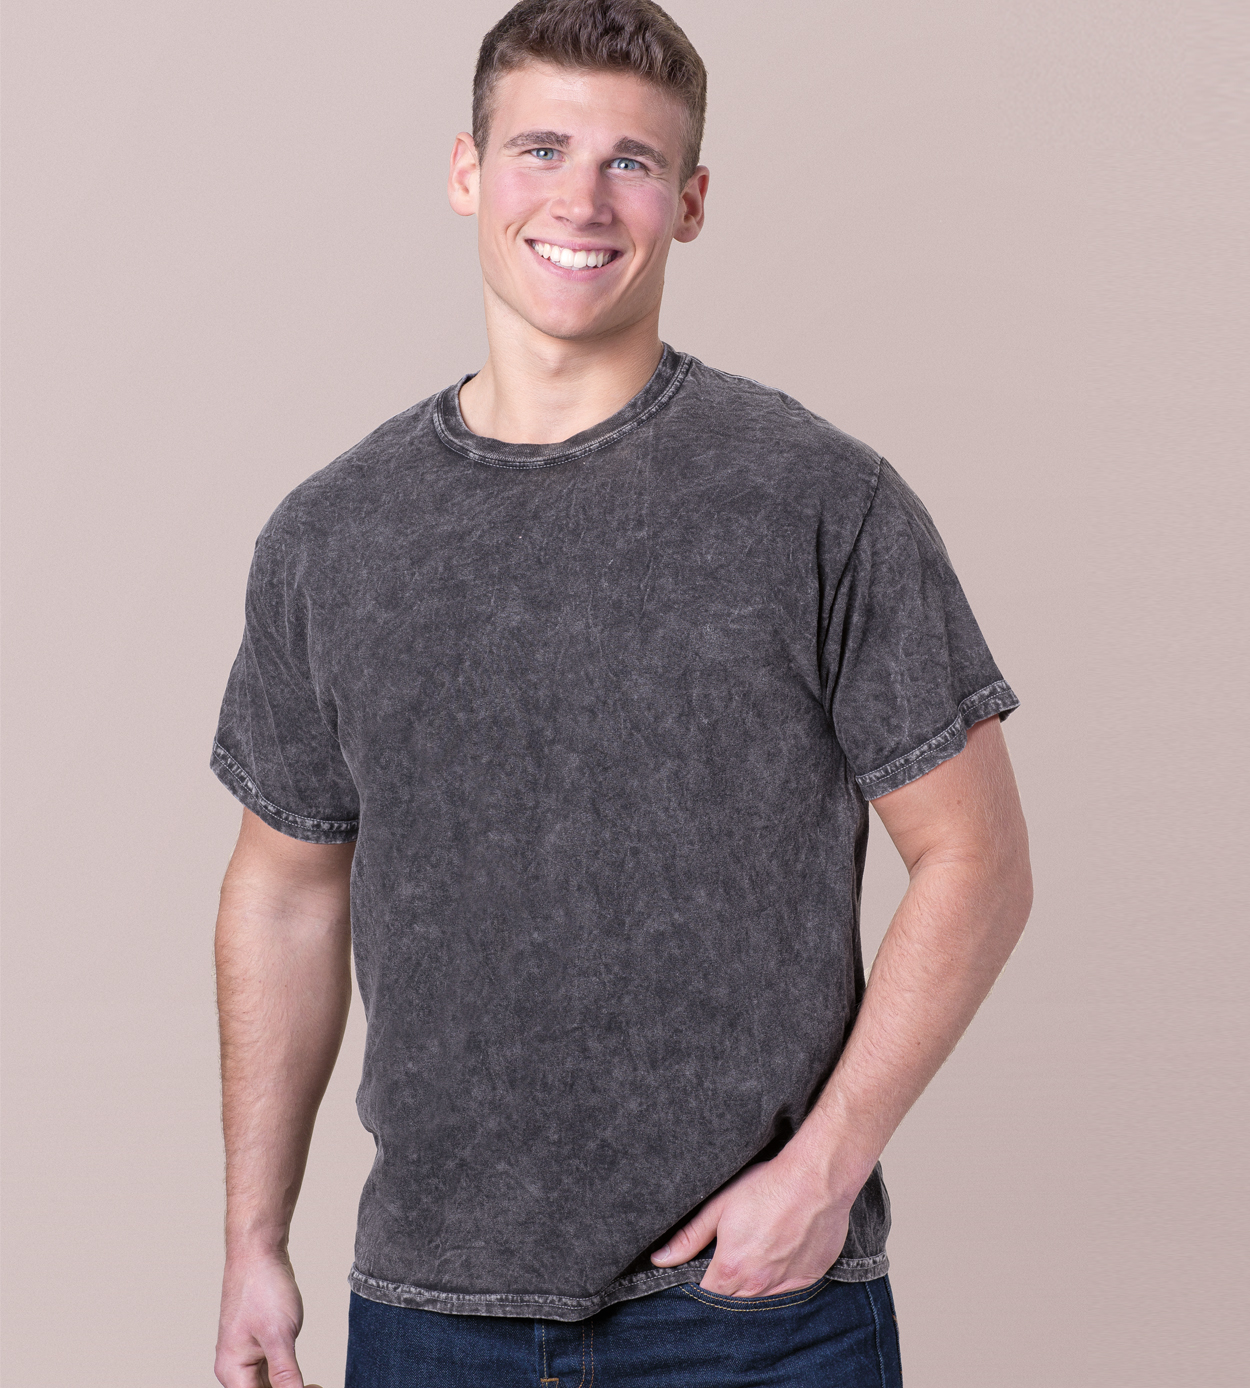 Colortone 1300 - Mineral Wash Tee $8.35 - T-Shirts